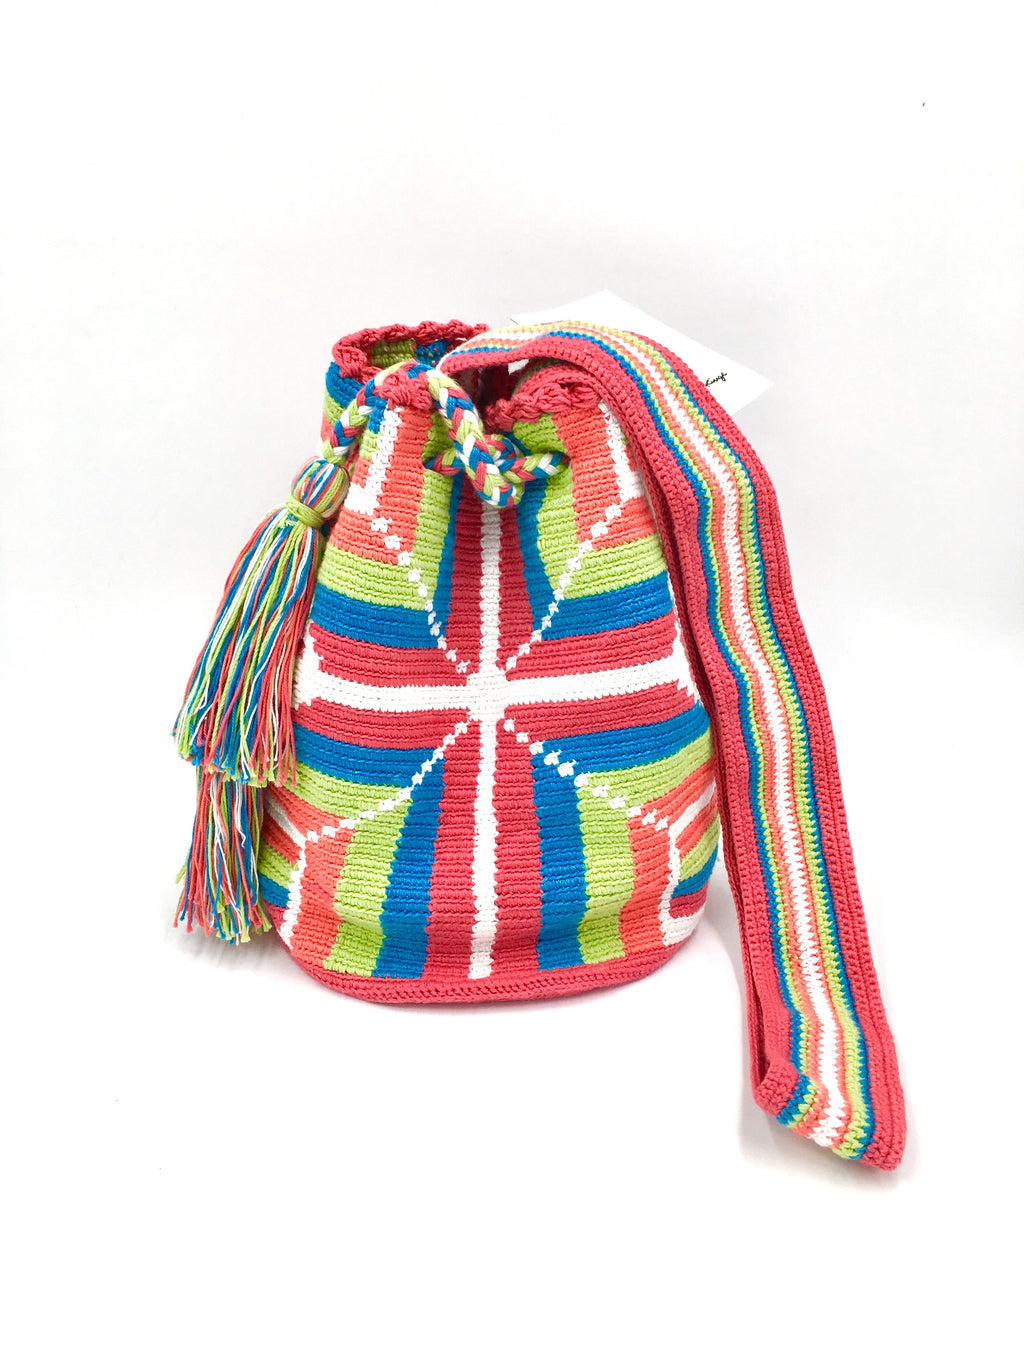 Pompom bag, wayuu pattern.